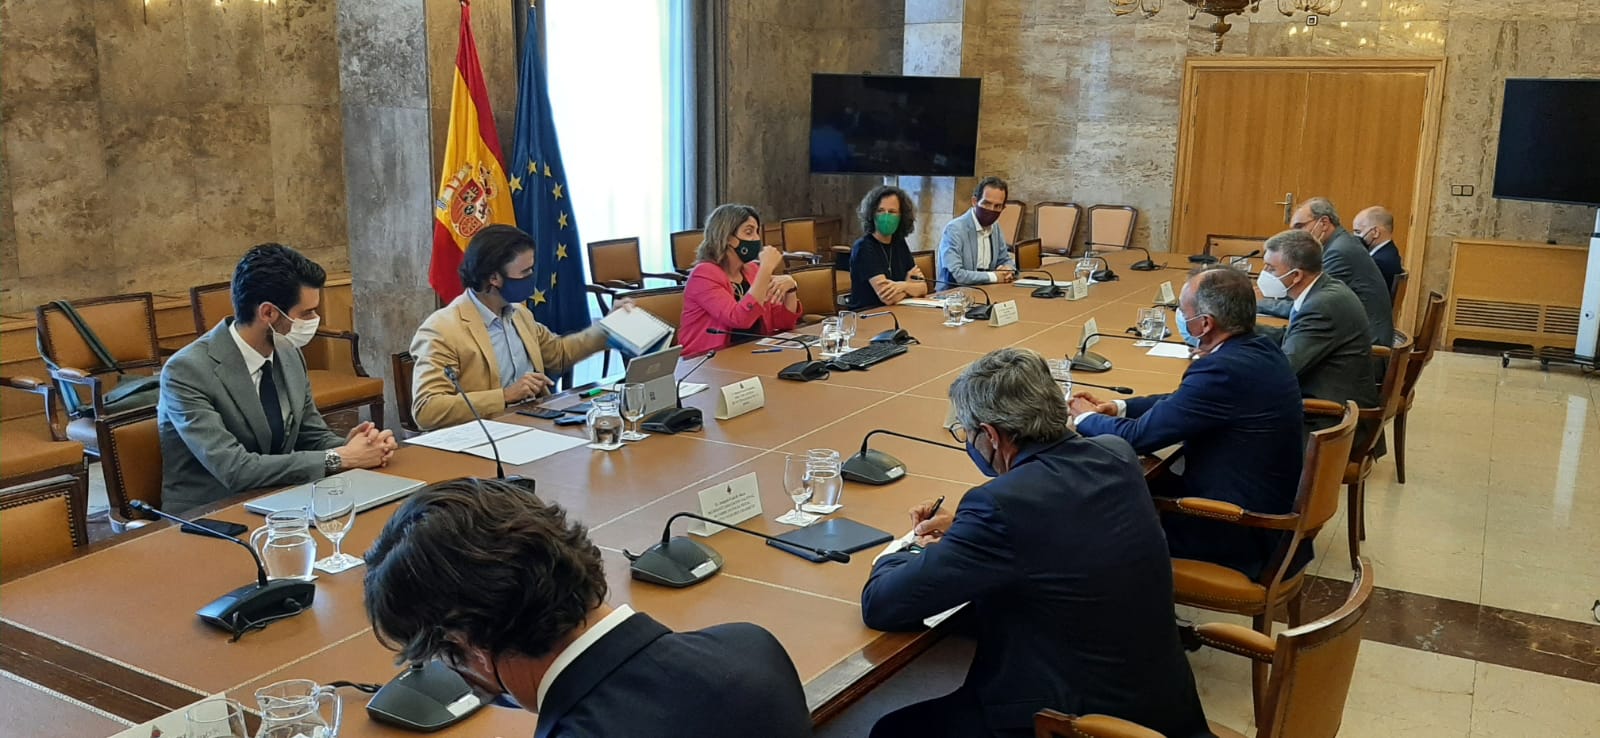 Representantes del clúster cerámico mantienen una reunión con la ministra Teresa Ribera